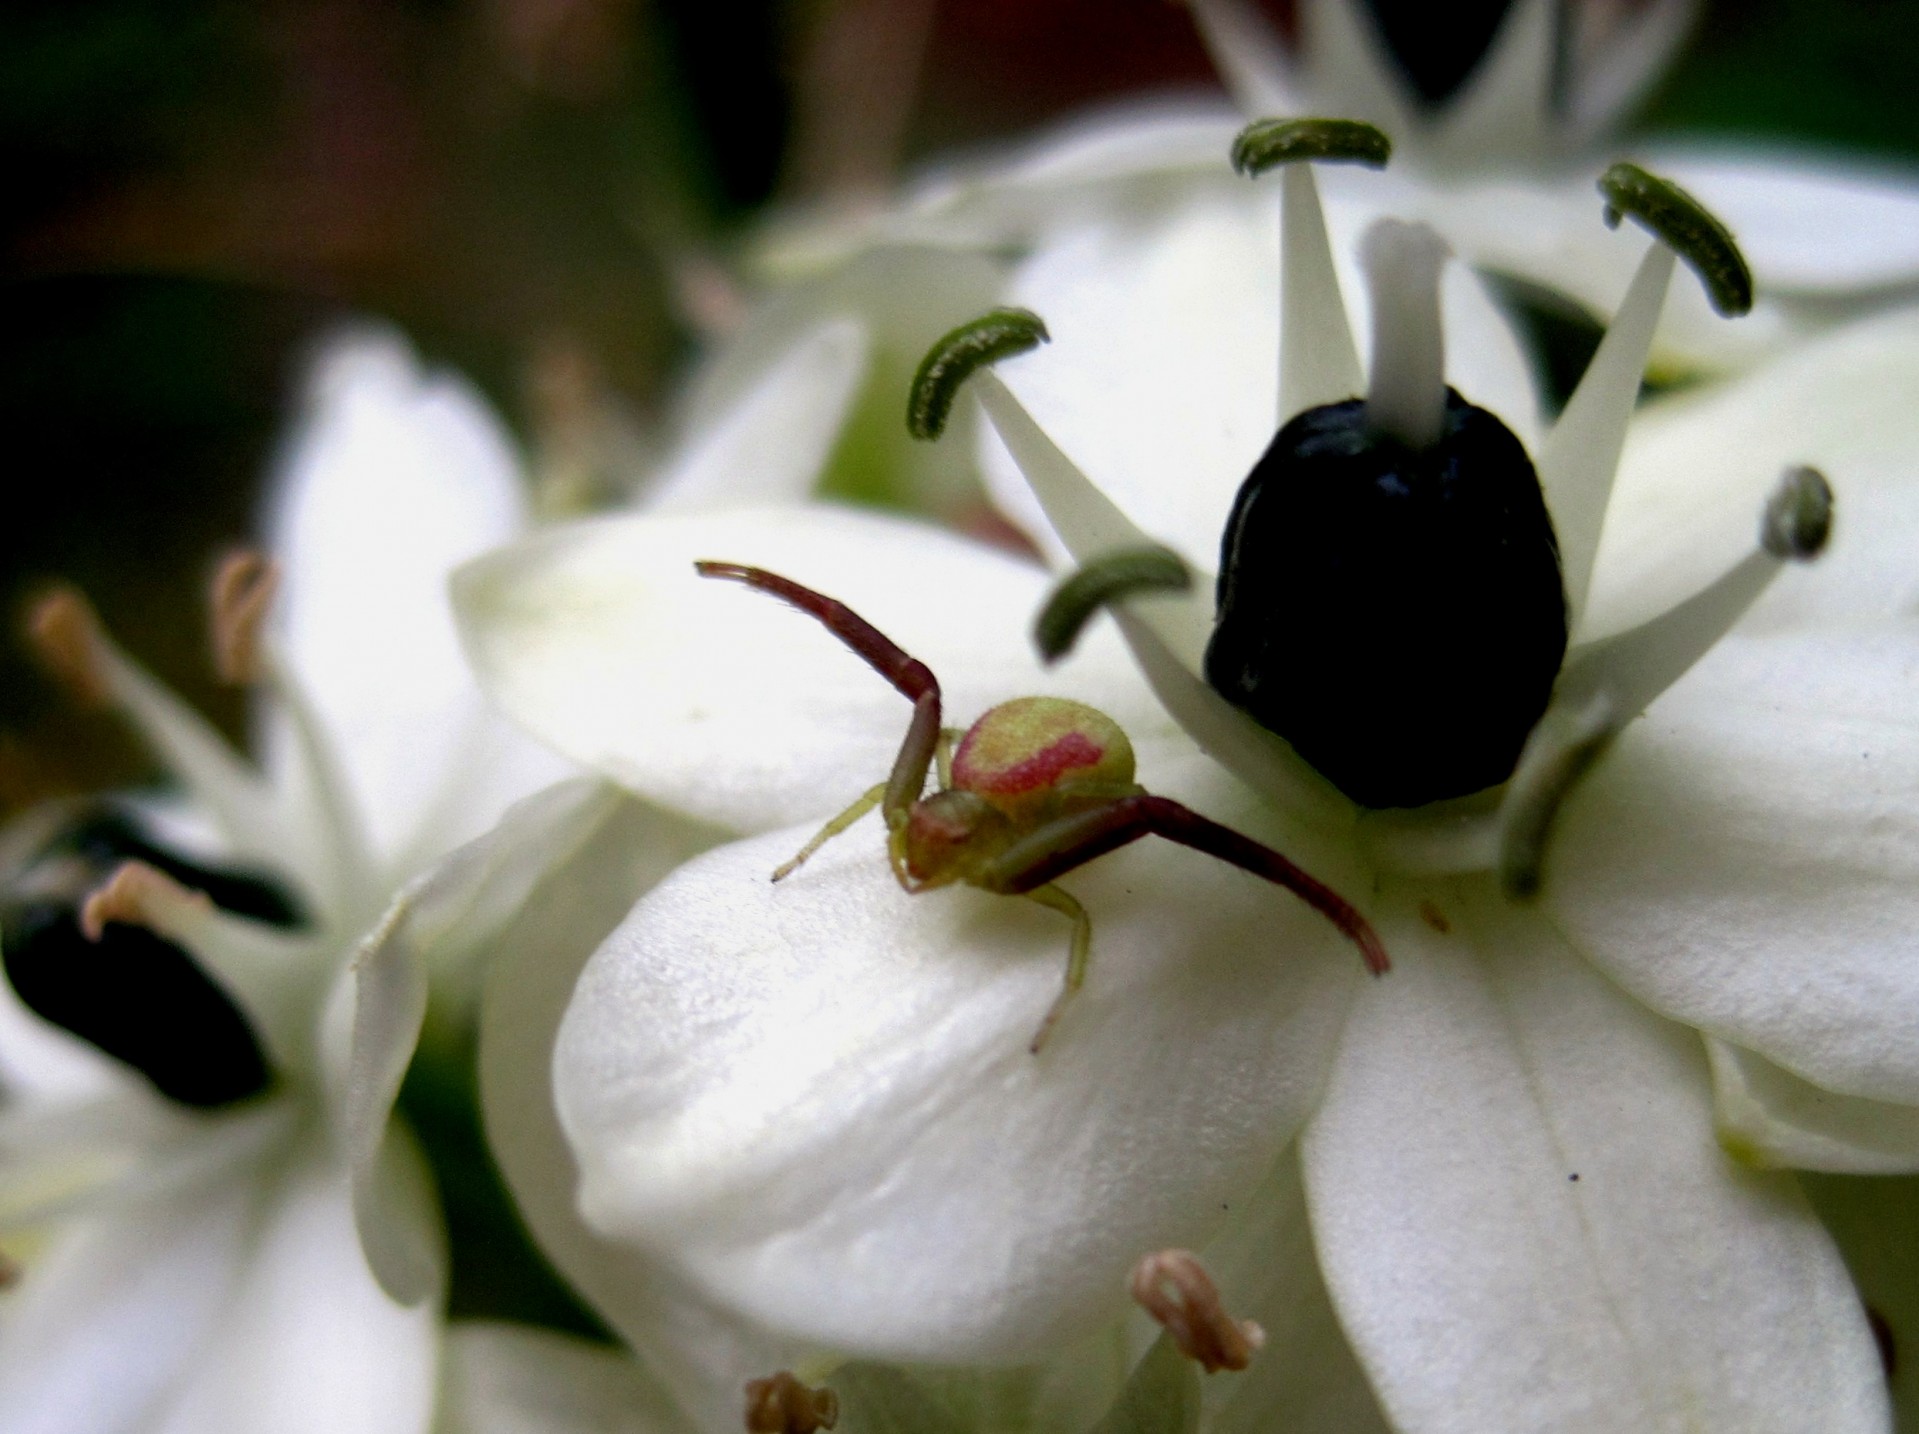 краб-паук на белый цветок